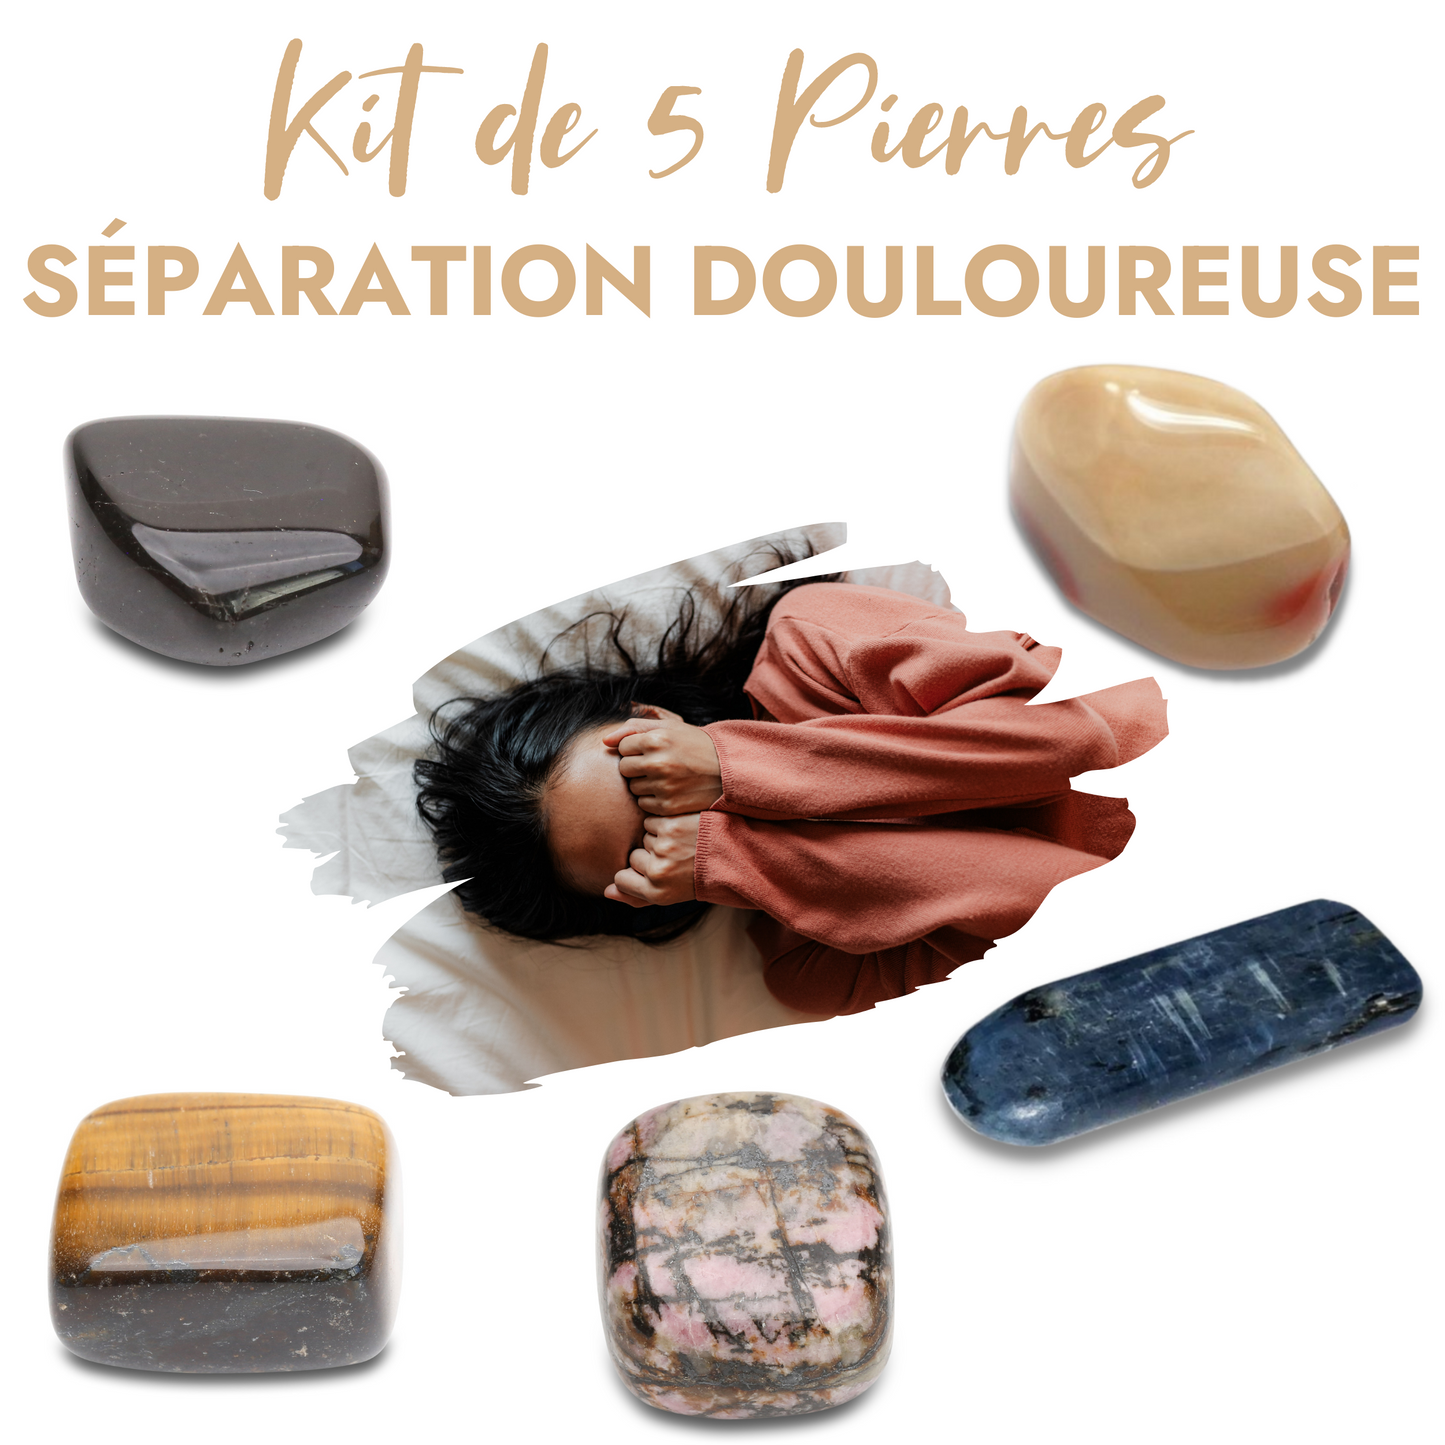 Kit de 5 pierres “Séparation douloureuse” - Karma Yoga Shop